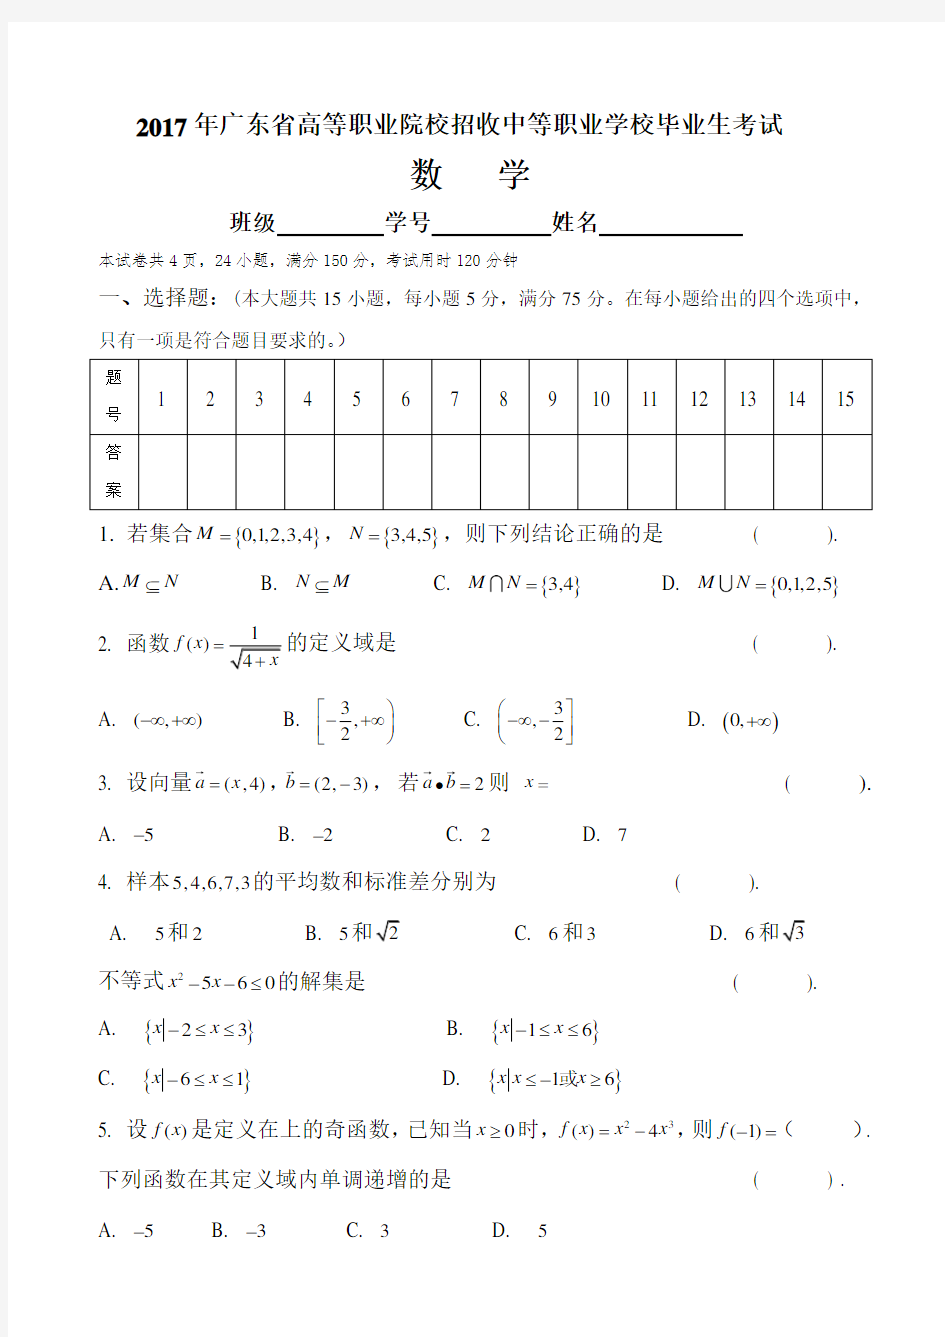 2017年广东省3+证书高职高考数学试卷(真题)和答案